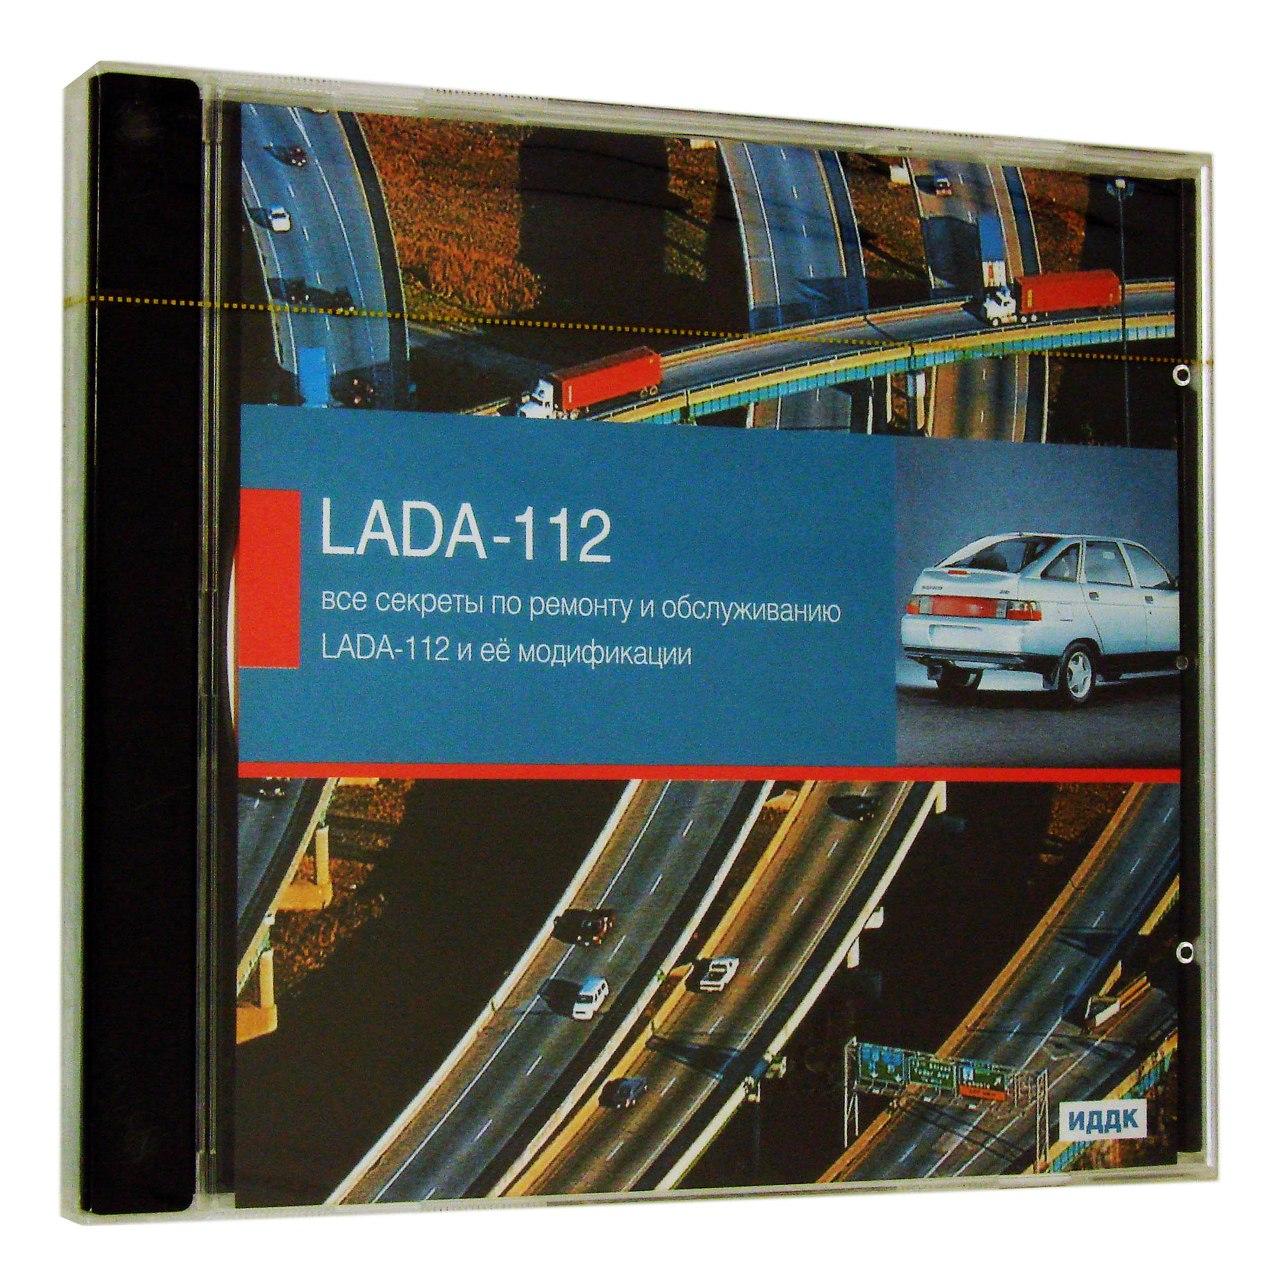 Компьютерный компакт-диск ВАЗ - LADA -112 и её модификации [Все секреты по ремонту и обслуживанию] (ПК), фирма "ИДДК", 1CD